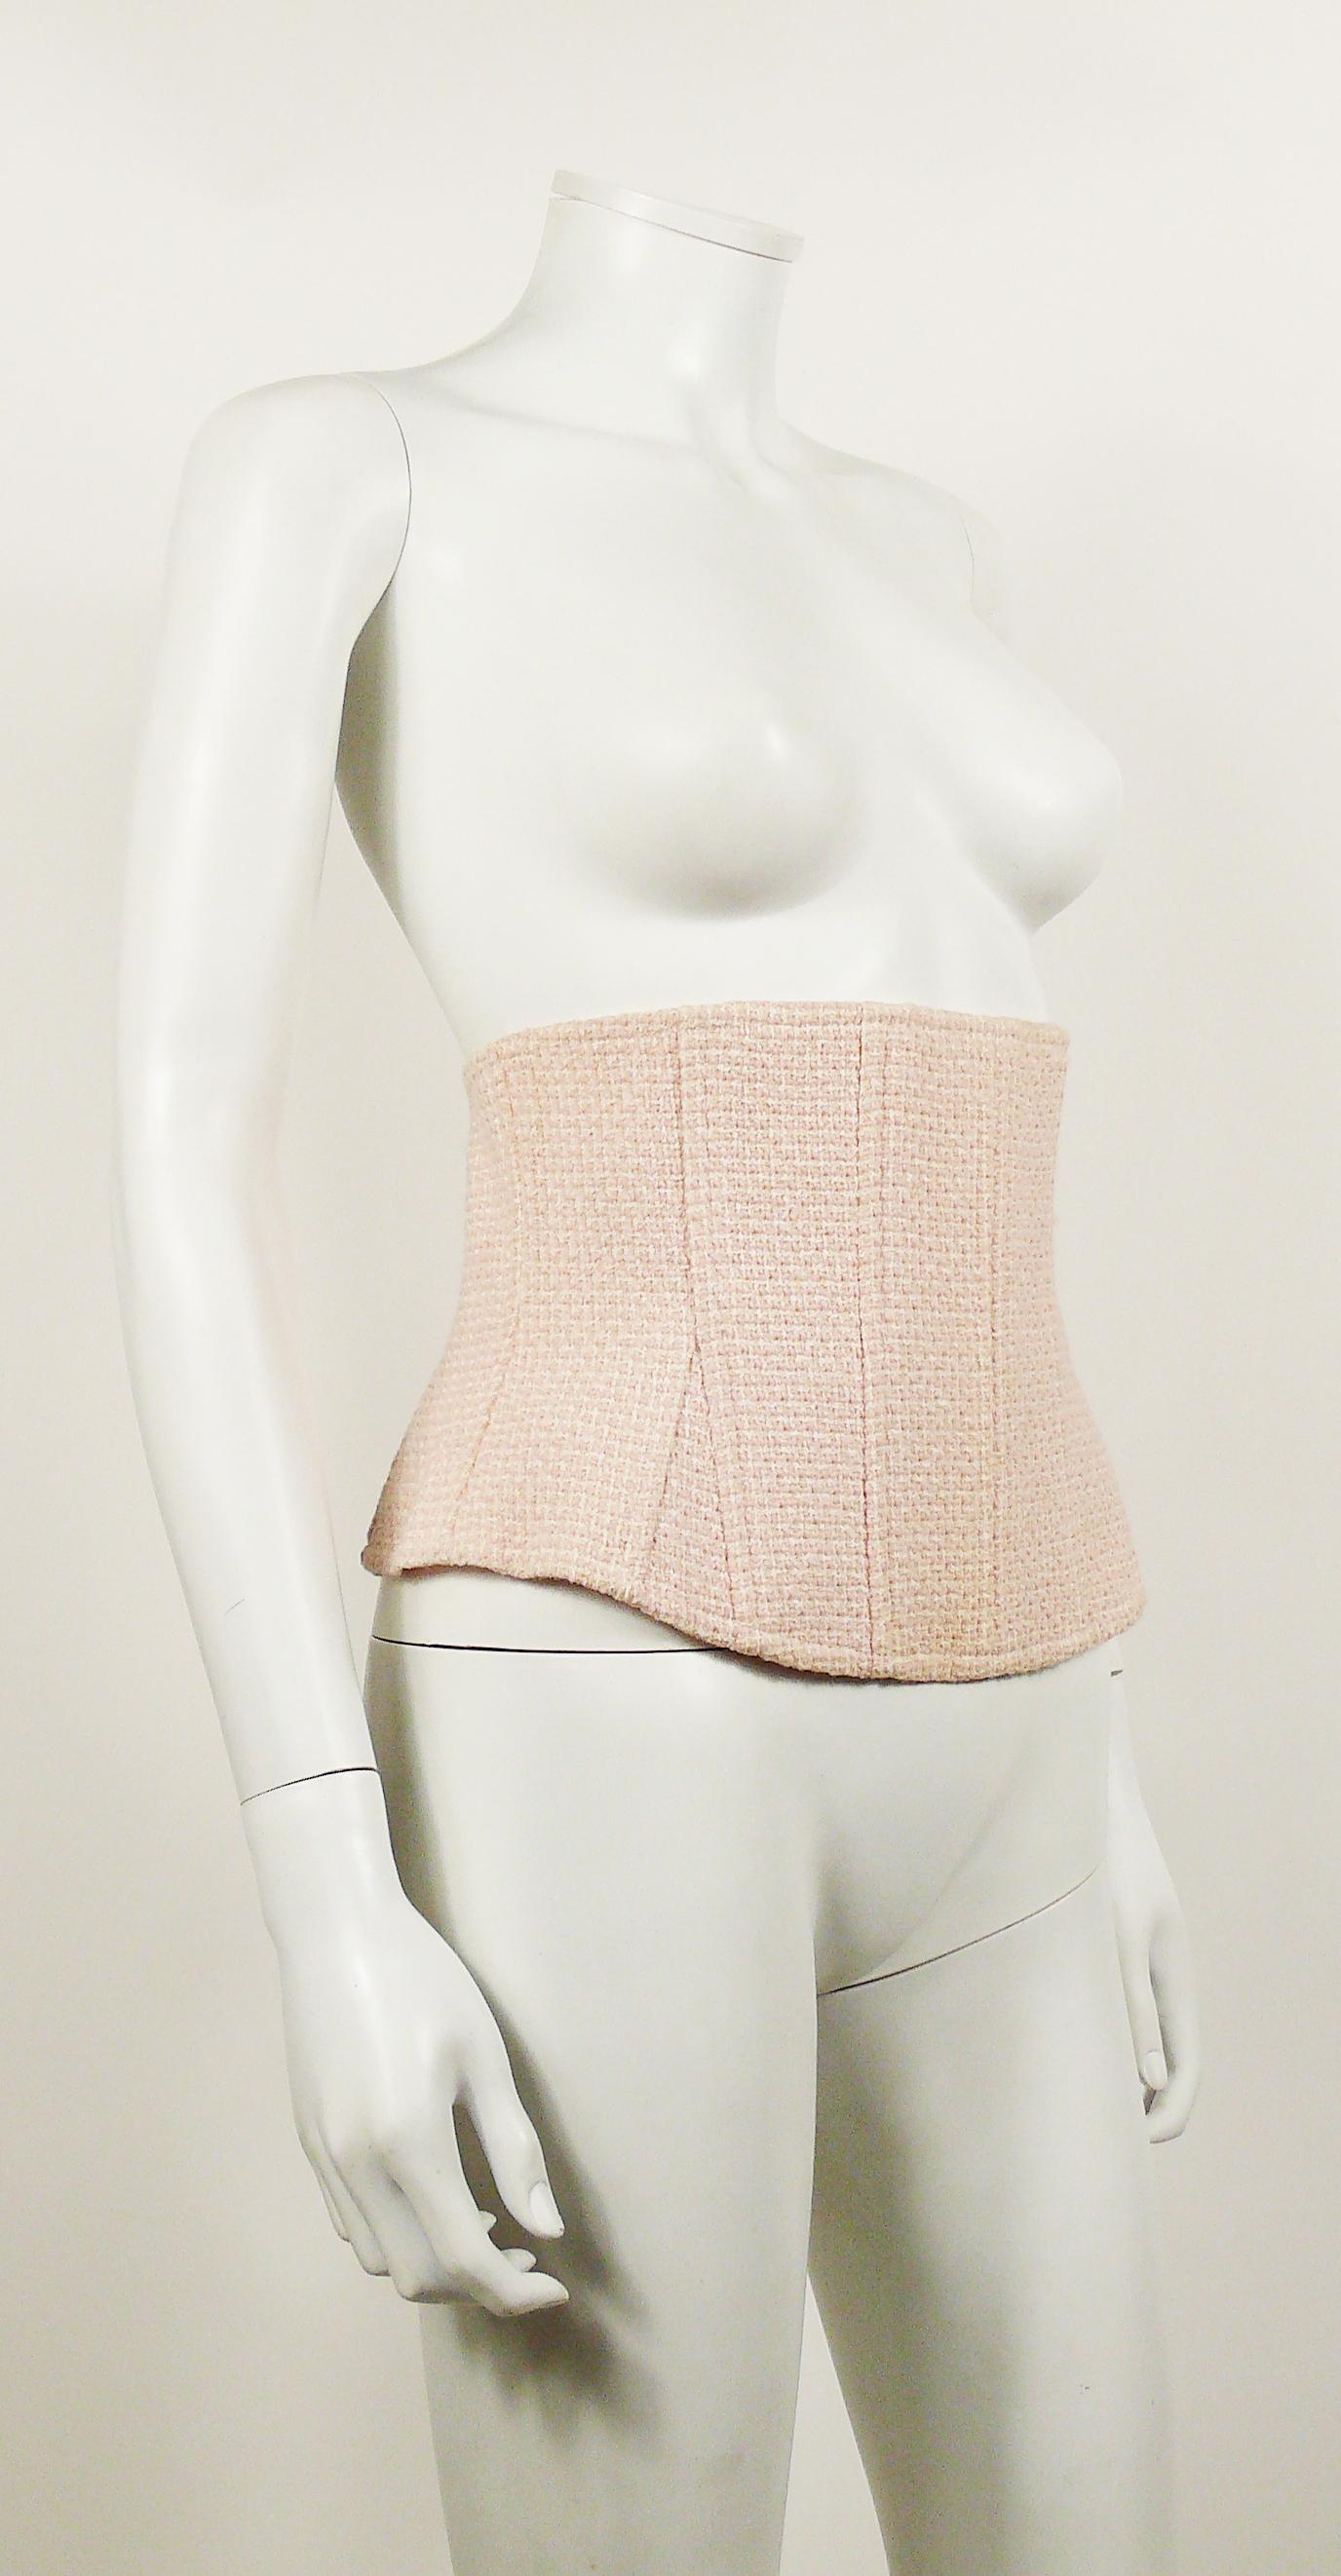 Chanel Vintage Baby rosa klassischen Tweed entbeint Korsett Gürtel. 

Aus der Frühjahr/Sommer-Kollektion 1994 von Ready-to-Wear. 

Reißverschluss auf der Rückseite. 
Innenfutter mit CC-Logos. 

Auf dem Etikett steht CHANEL BOUTIQUE. 

Fehlende